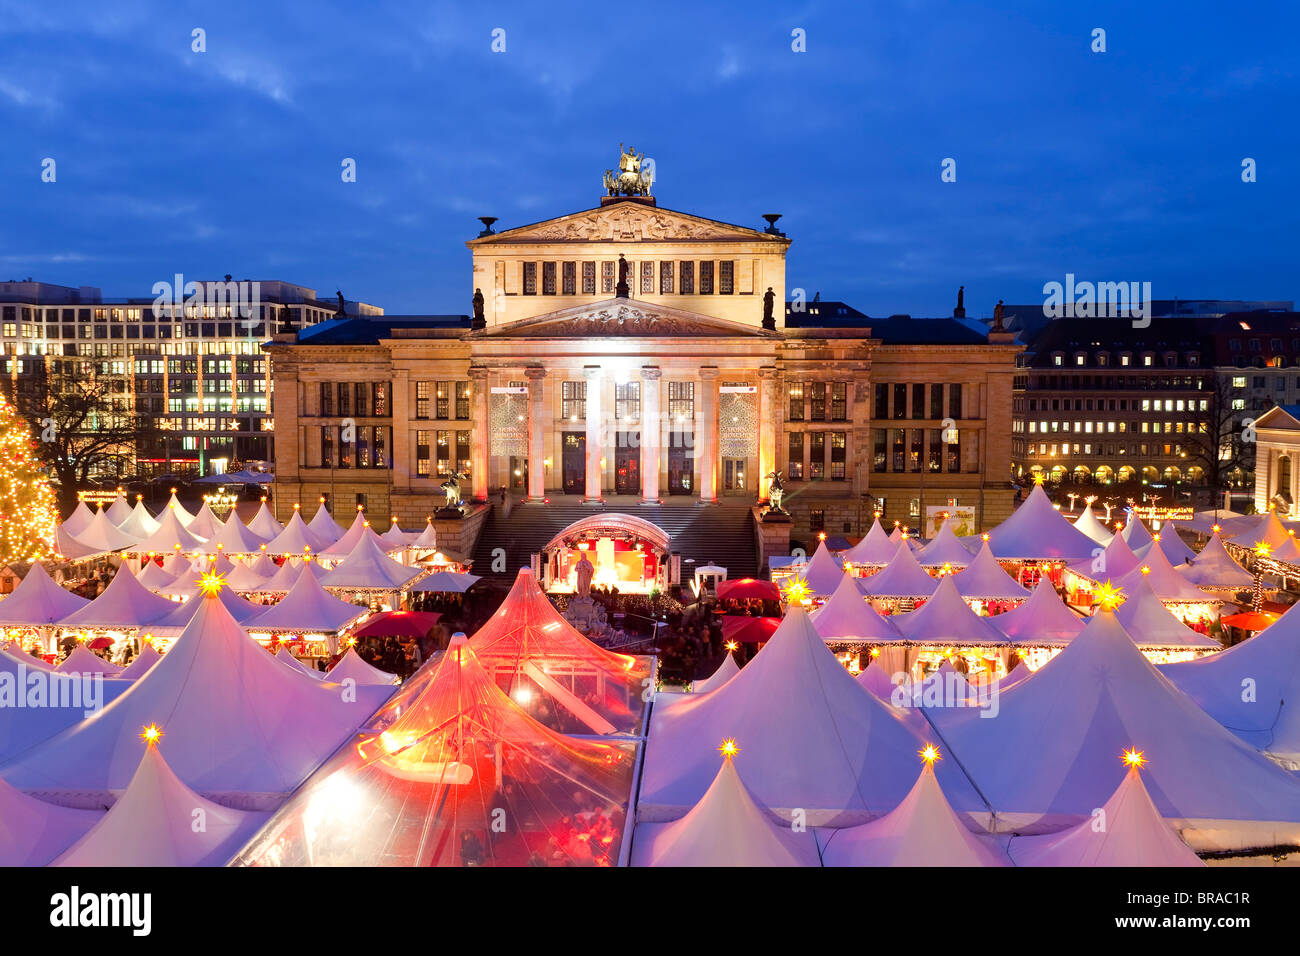 Marché de Noel au Gendarmenmarkt, allumé à la tombée de la nuit, Berlin, Germany, Europe Banque D'Images